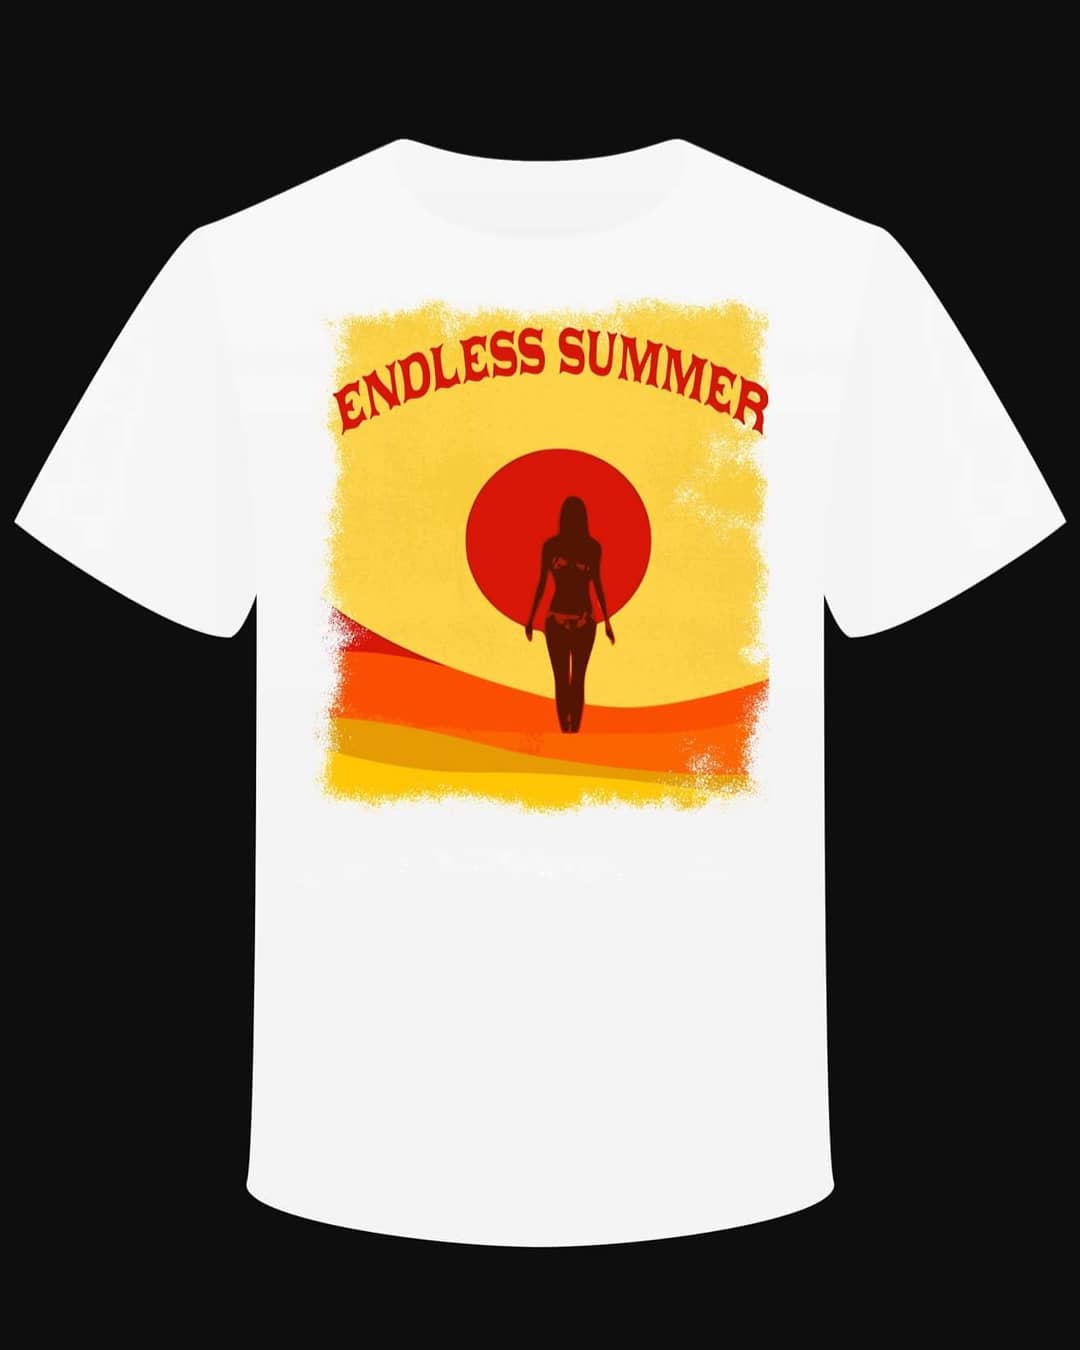 T-shirt "Endless Summer"